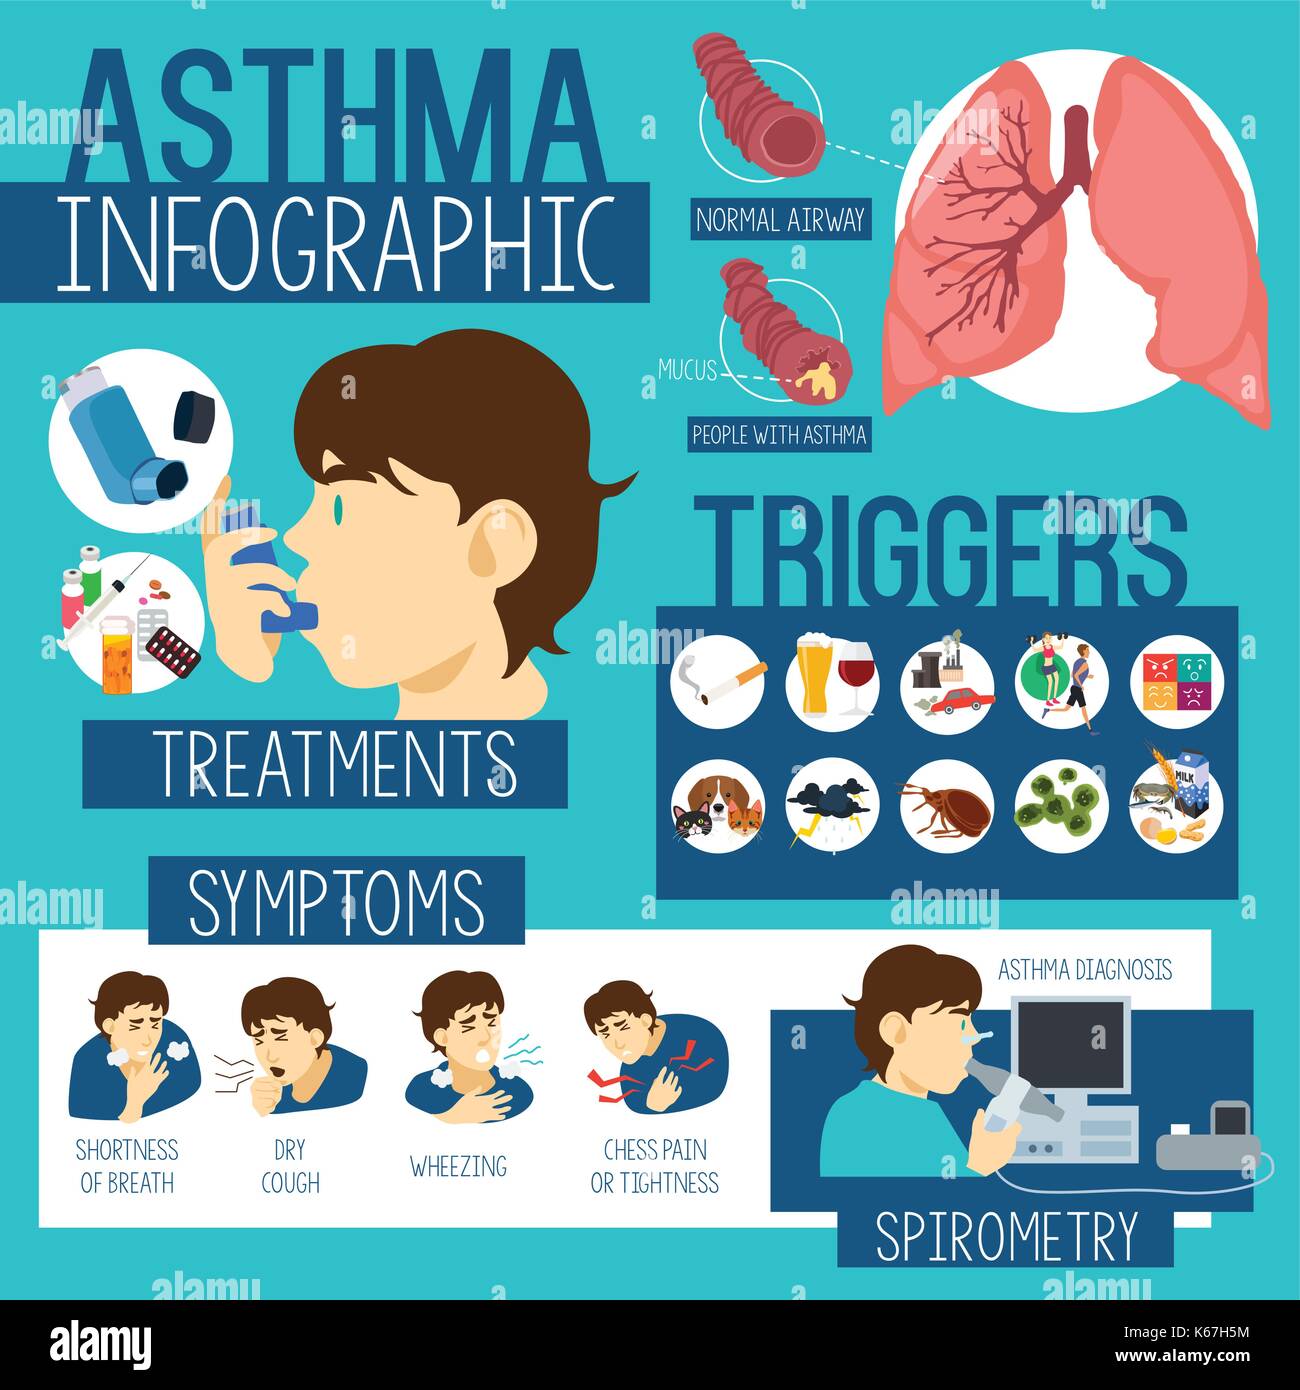 Постер астма. Инфографика бронхиальная астма. Триггеры бронхиальной астмы. Триггеры астмы картинки. Профилактика астмы инфографика.